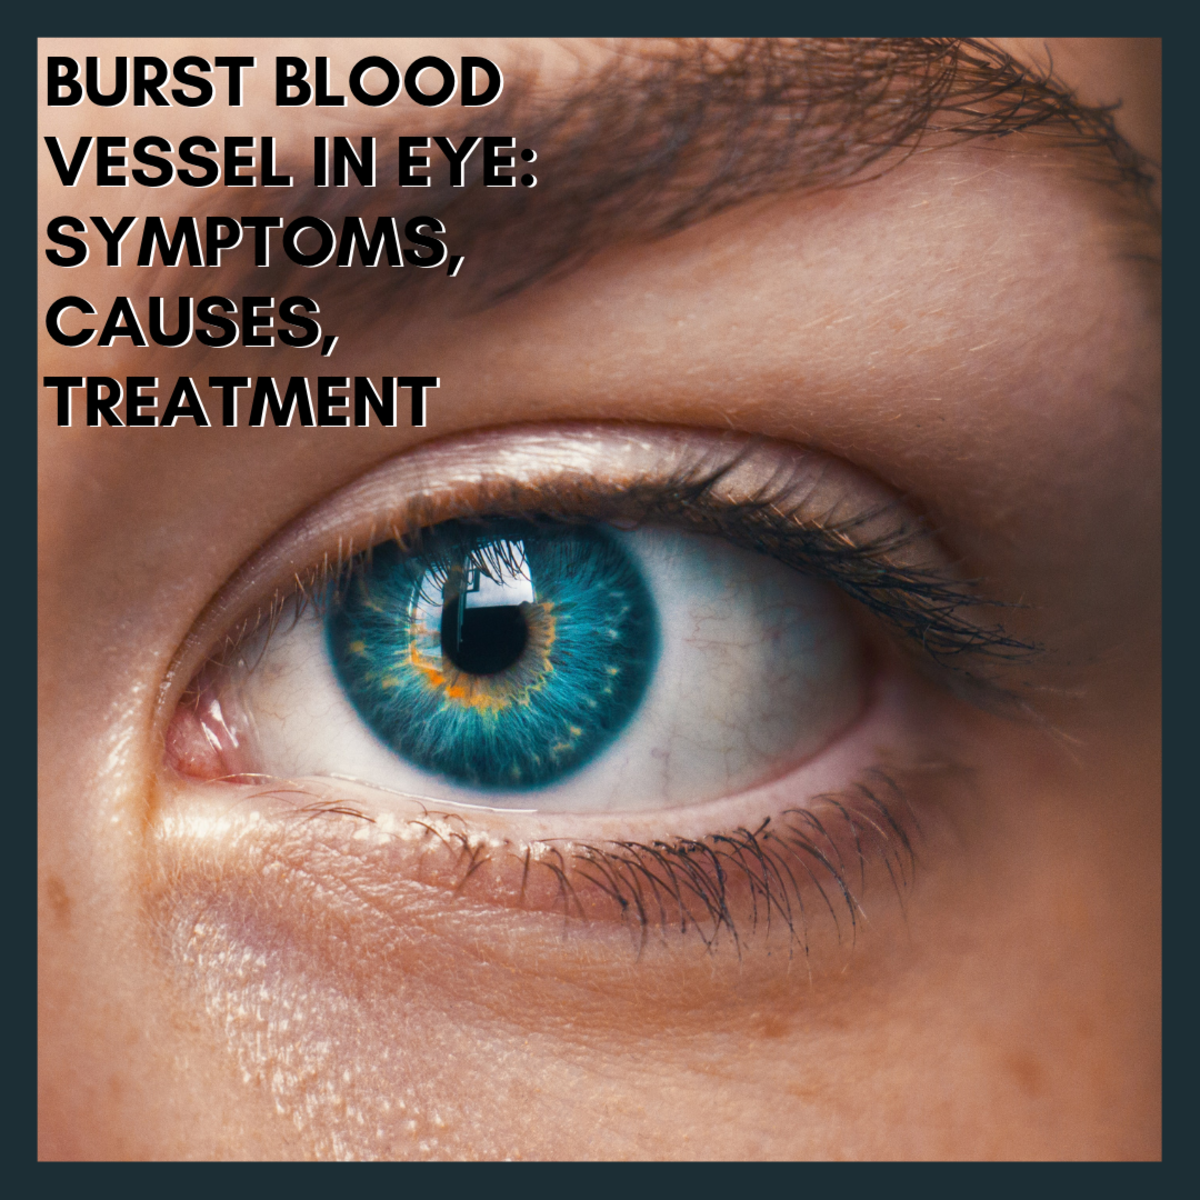 Burst Blood Vessel in Eye